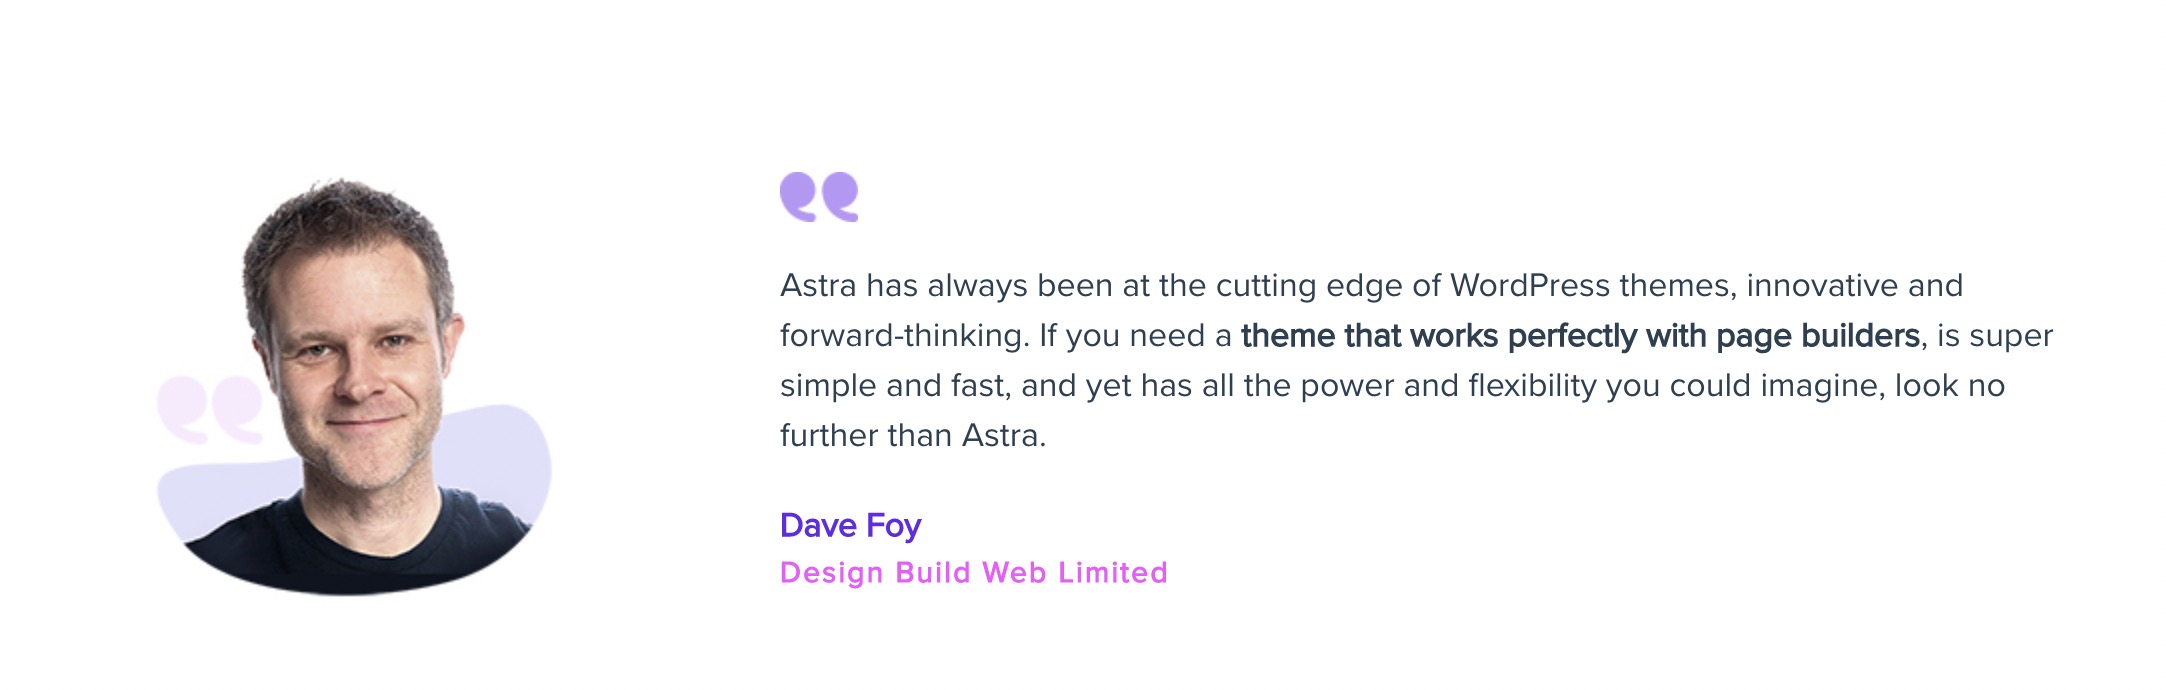 Astra testimonial - Dave Foy 